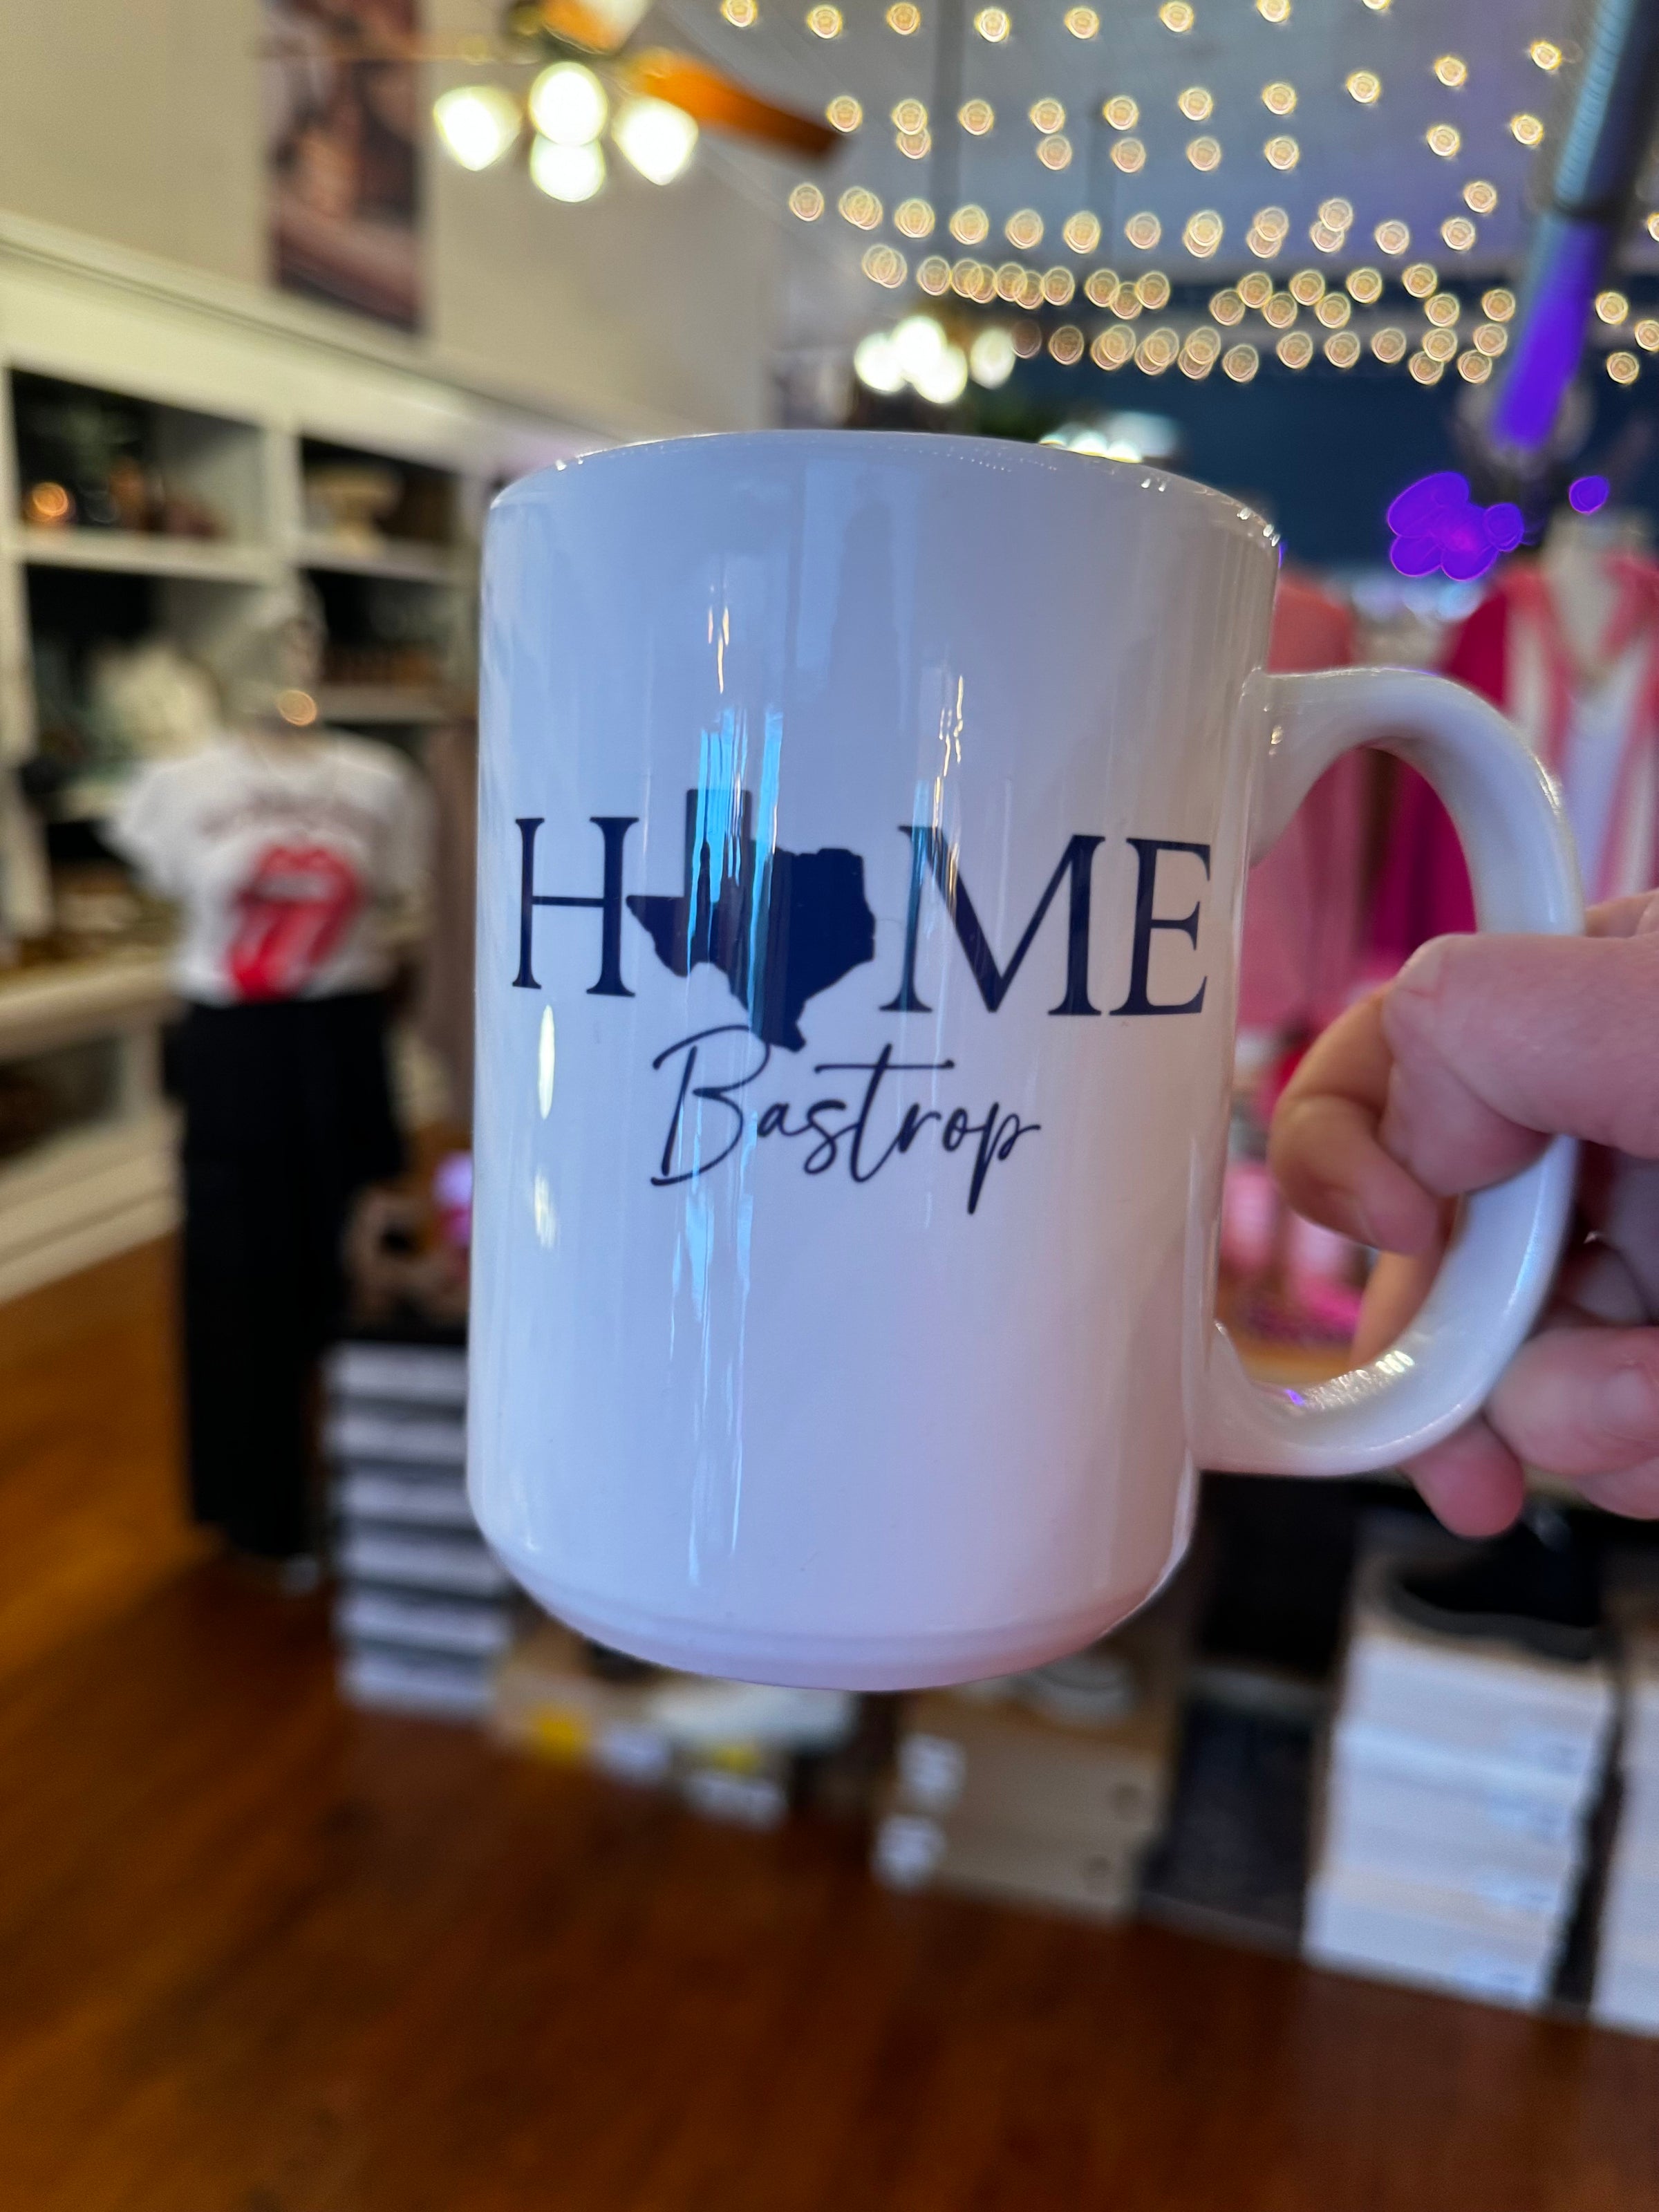 Home Bastrop, Tx Mug